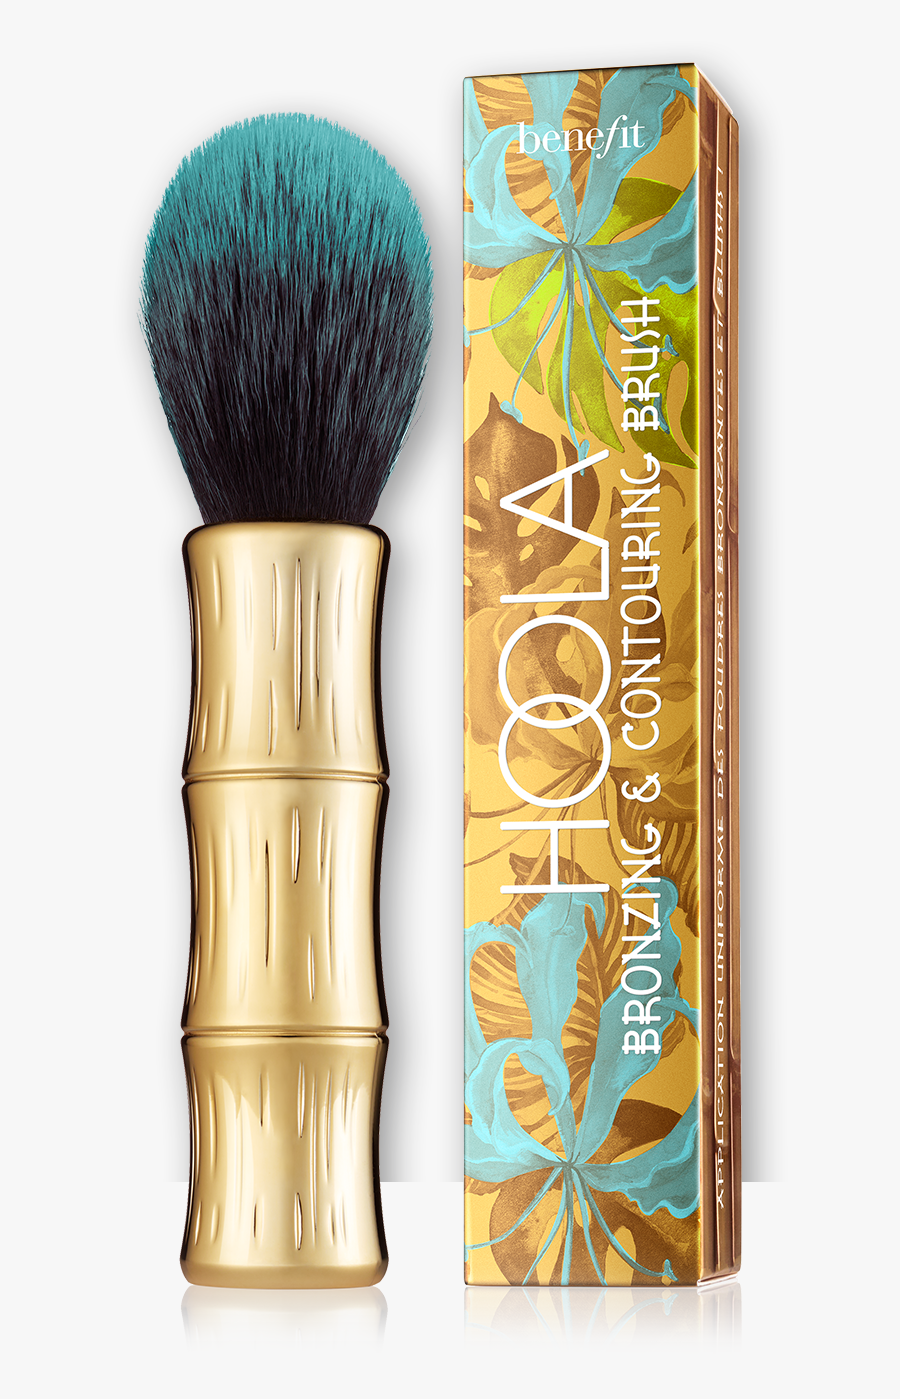 Clip Art Bobbi Brown Makeup Manual - Benefit Makeup Brush Set, Transparent Clipart